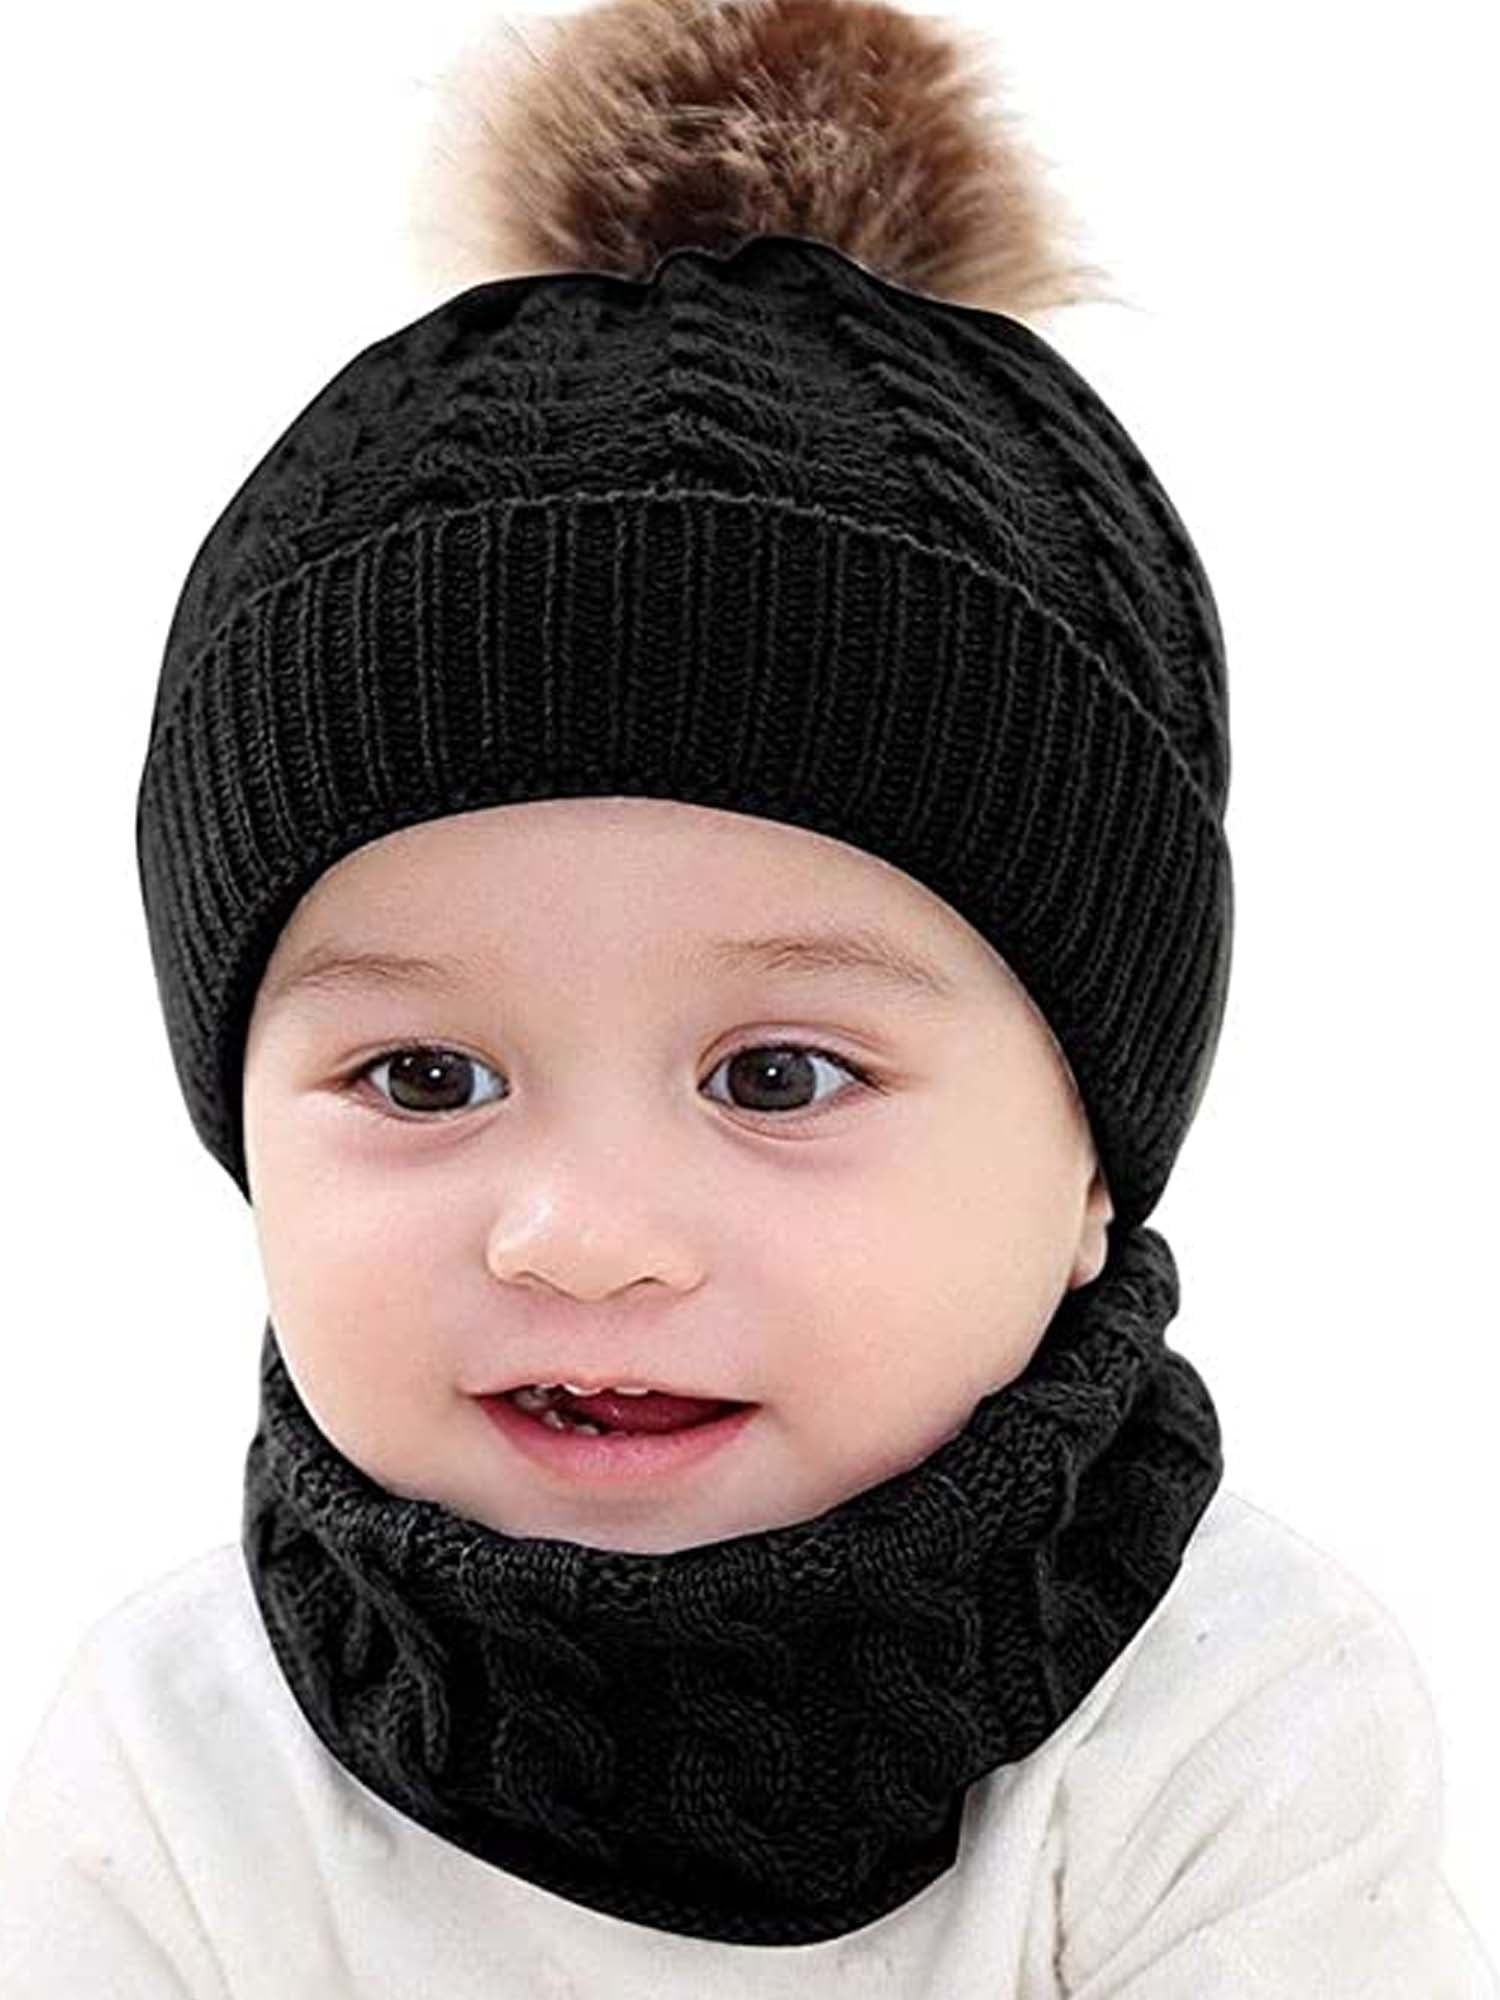 Infant Baby Kid Boys Girls Warm Knit Pom Pom Bobble Cap Beanie Hat Cute Scarf